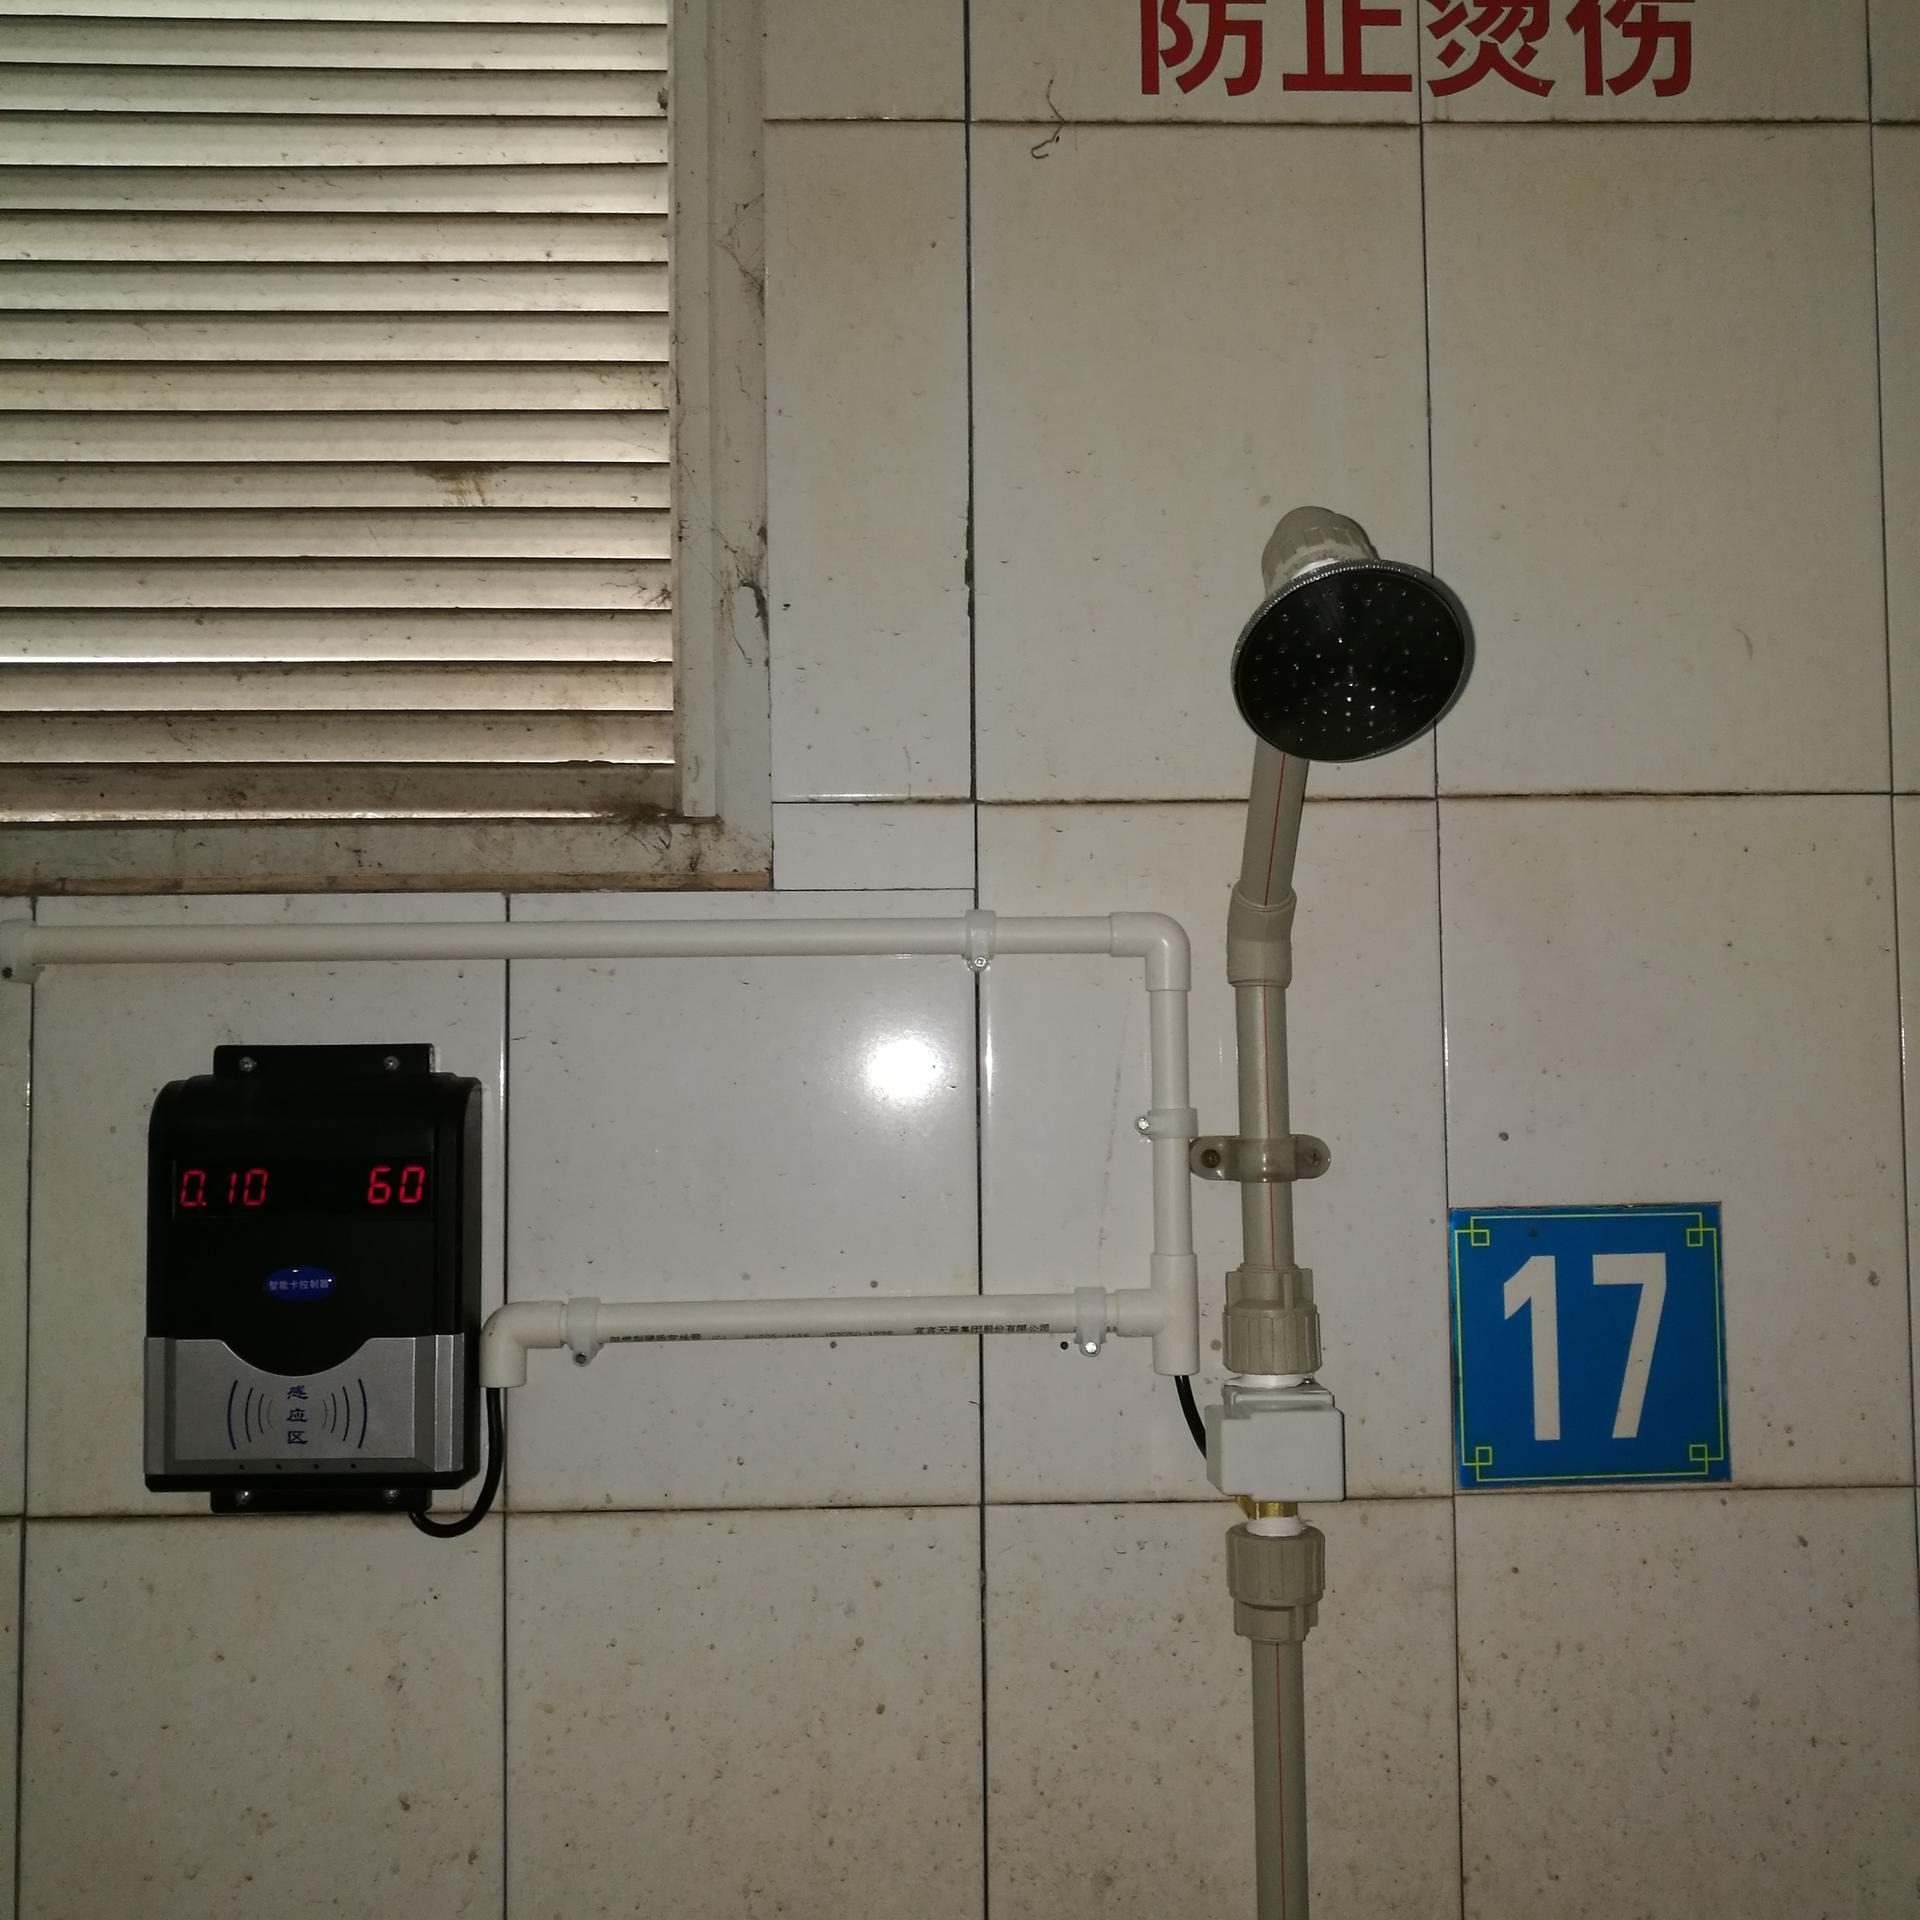 兴天下HF-660ic卡水控器 IC卡水控器 浴室插卡淋浴器